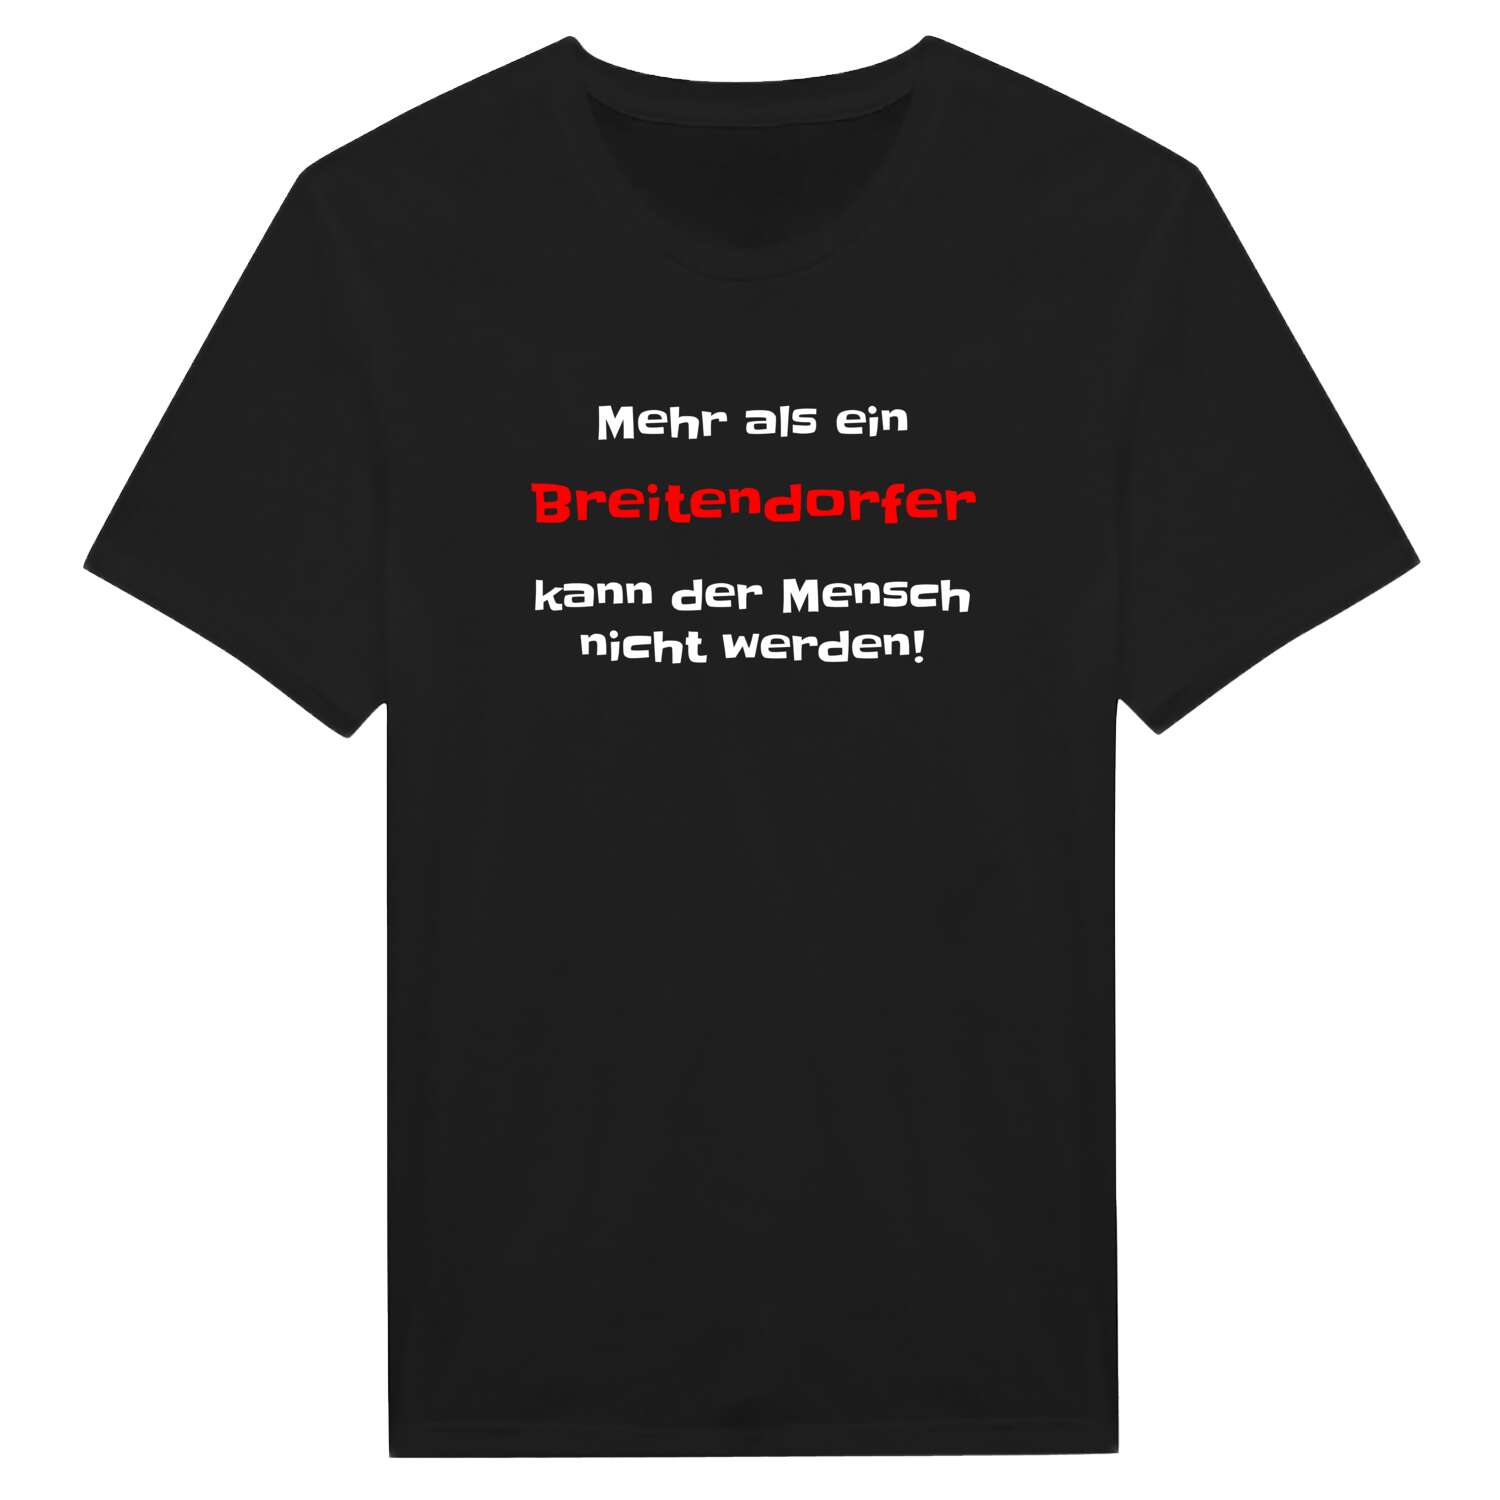 Breitendorf T-Shirt »Mehr als ein«